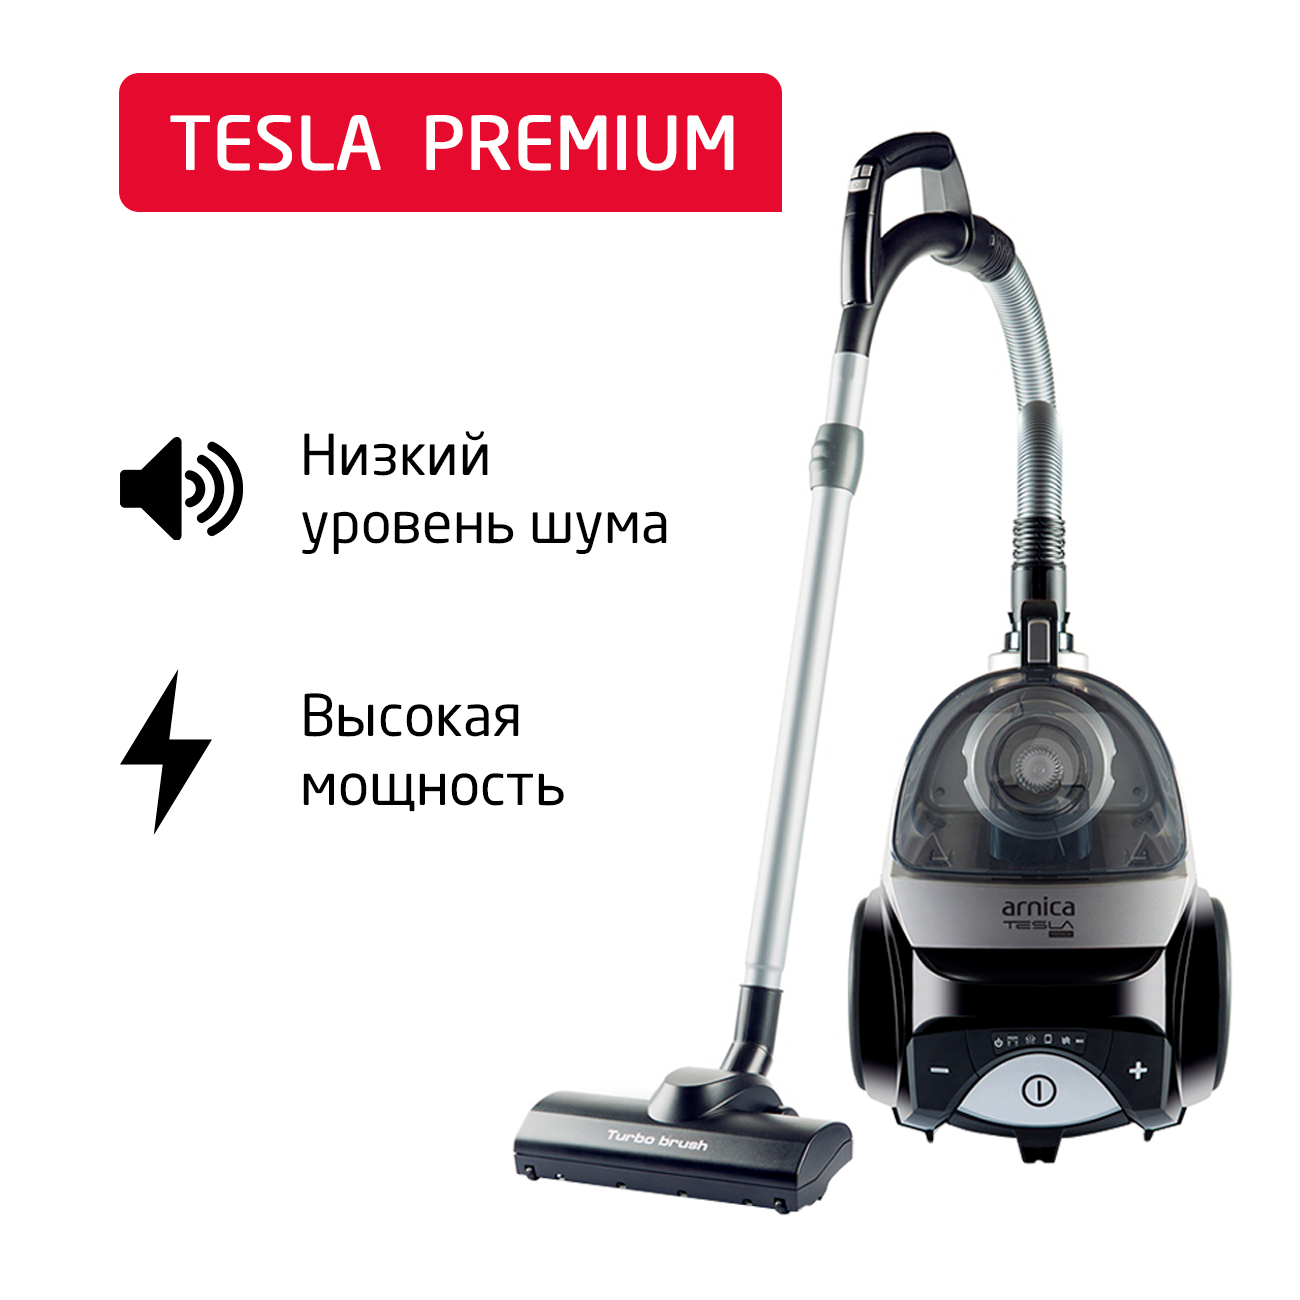 Пылесос ARNICA Tesla Premium серебристый, черный пылесос arnica 4000 зеленый